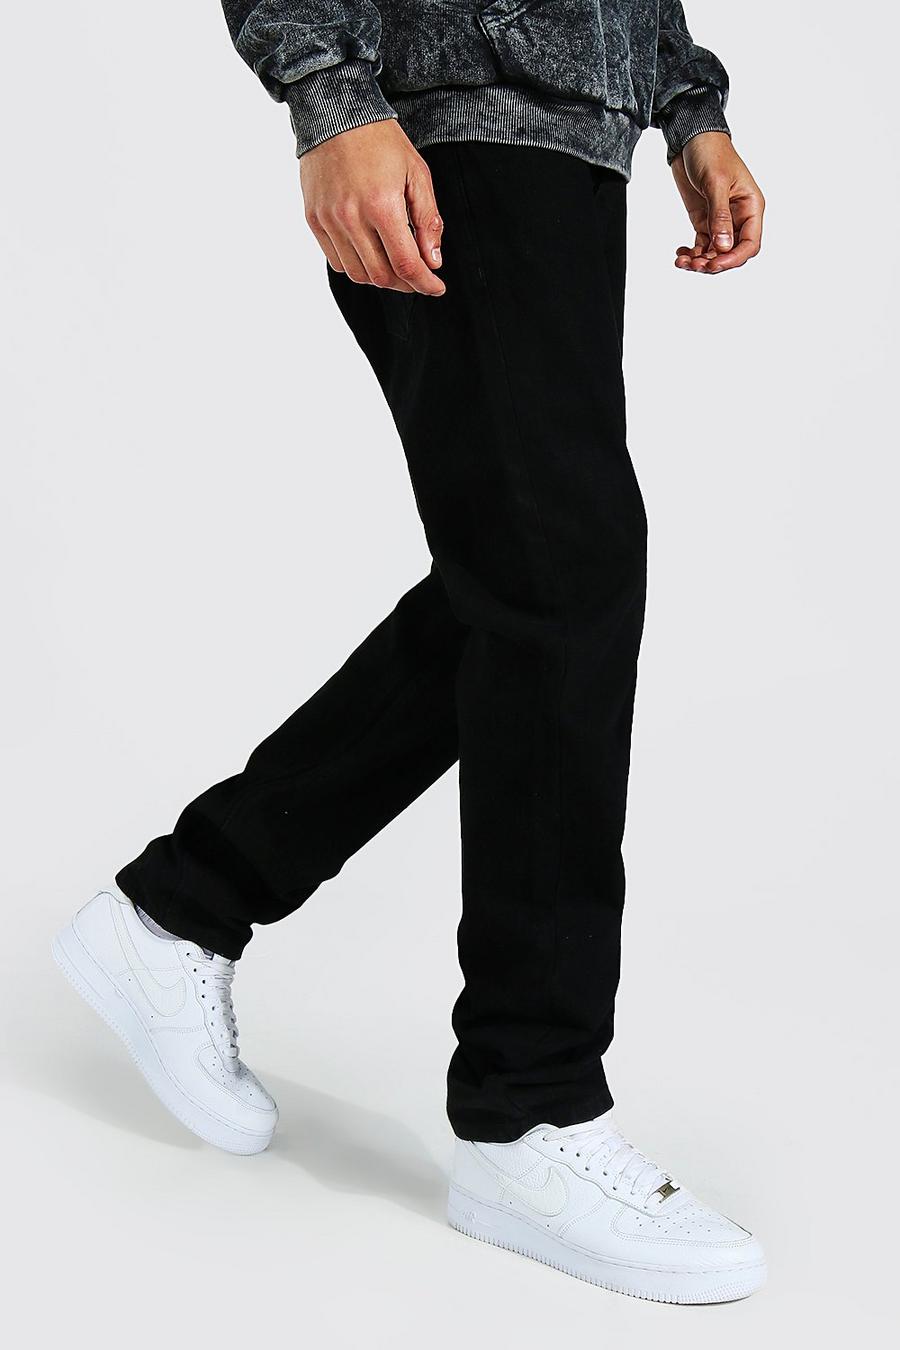 שחור אמיתי ג'ינס בגזרה משוחררת, לגברים גבוהים